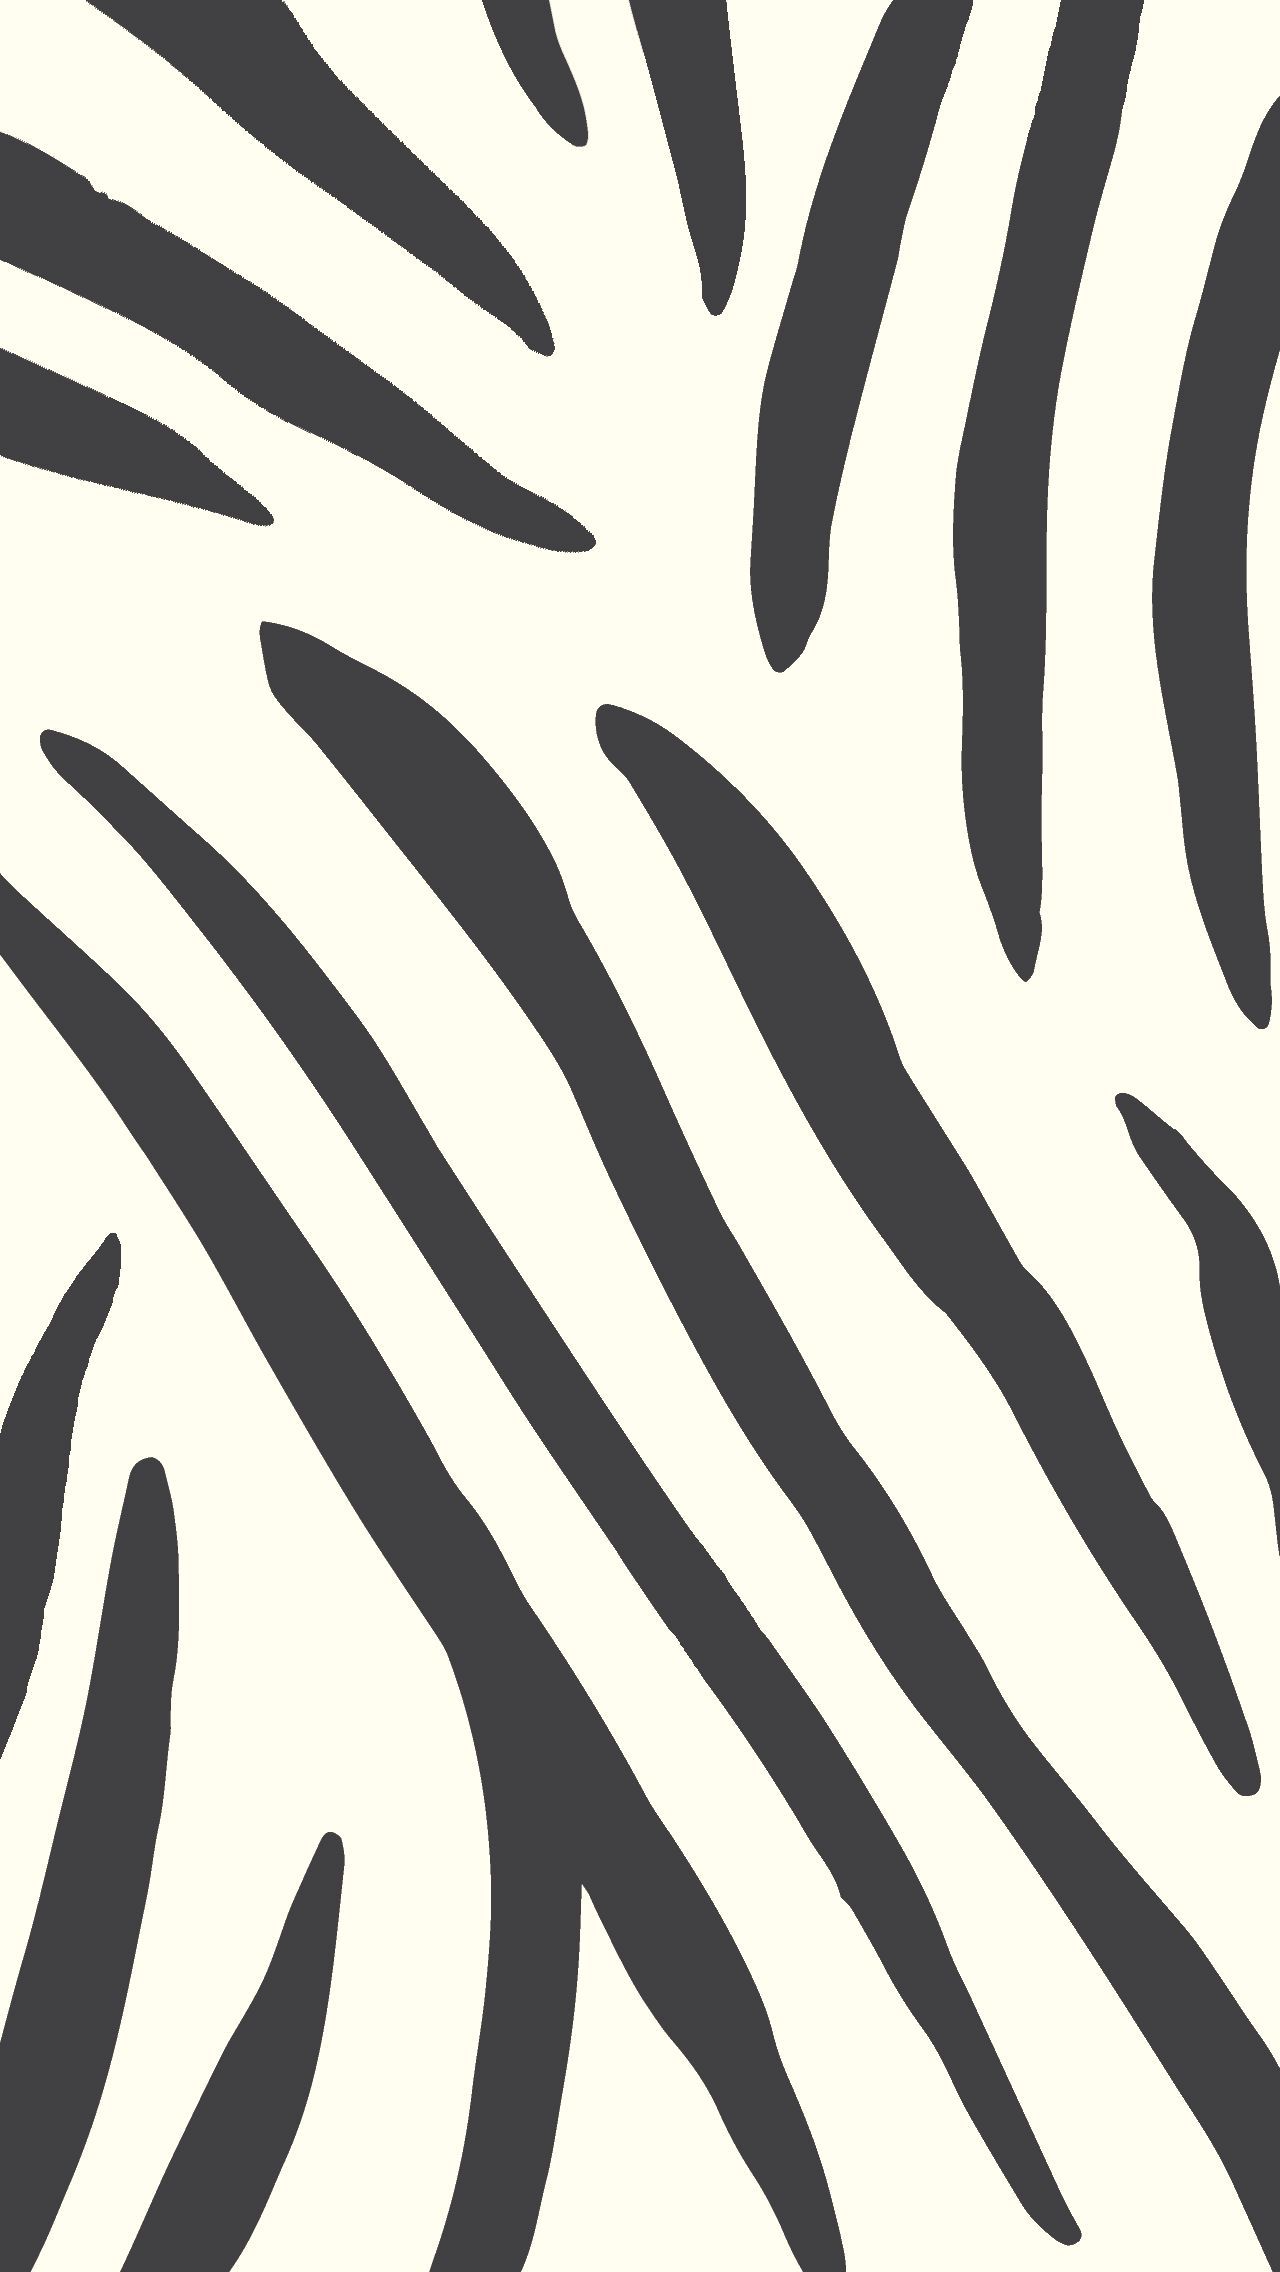 Zebra Print Free Wallpaper de pantalla para descargar gratis. Ponga sus manos sobre un. Animal print wallpaper, Zebra print wallpaper, Digital wallpaper